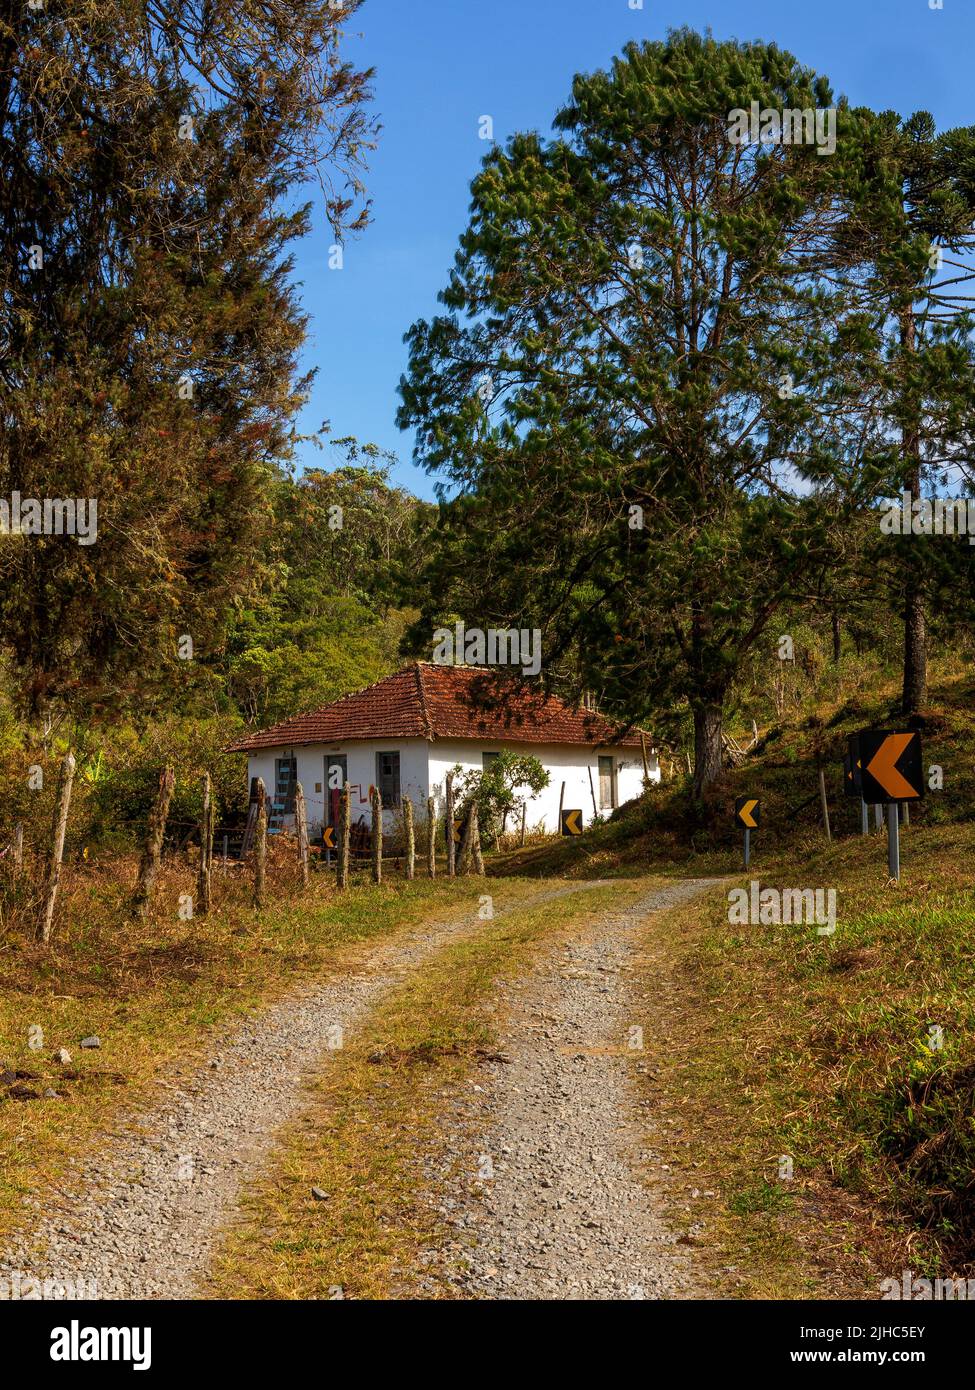 Vida rural en las colinas de Bocaina, un popular destino turístico, São Paulo Estate, Brasil Foto de stock